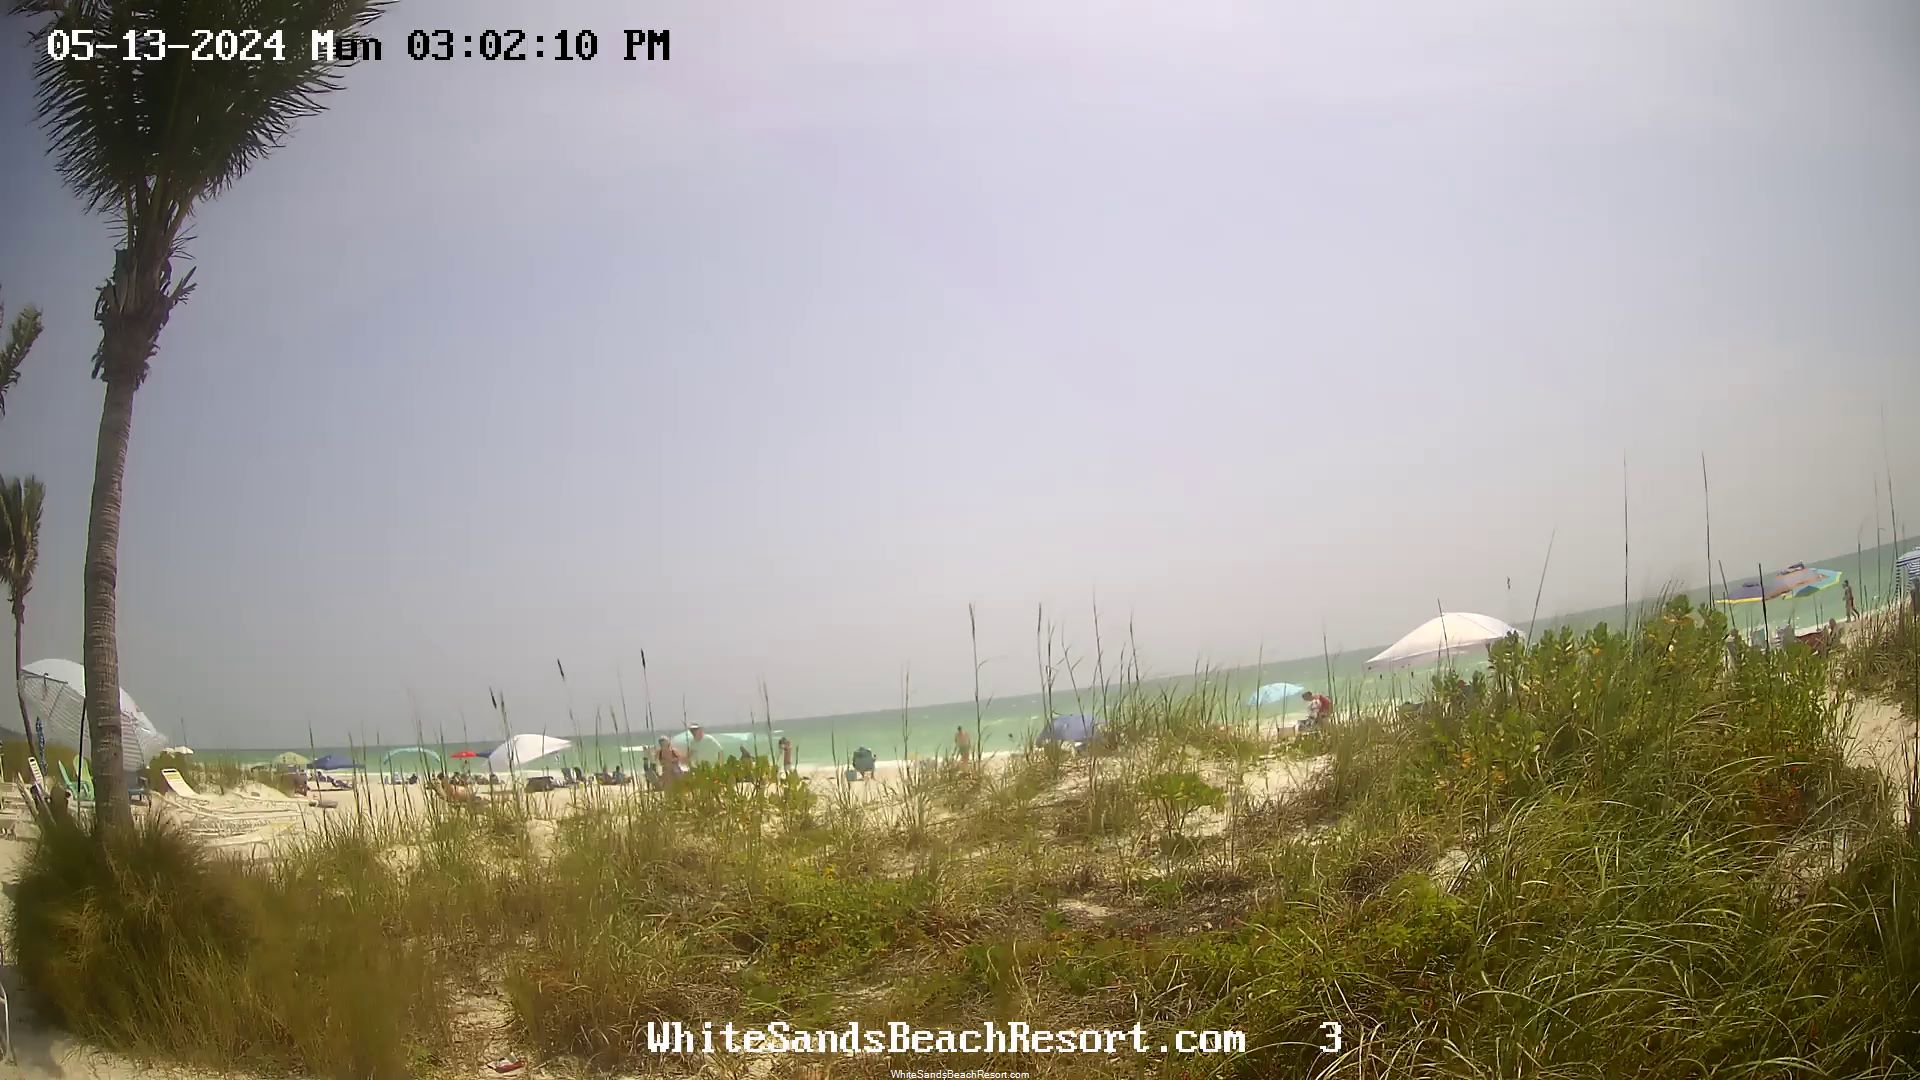 Holmes Beach, Florida Mo. 14:56